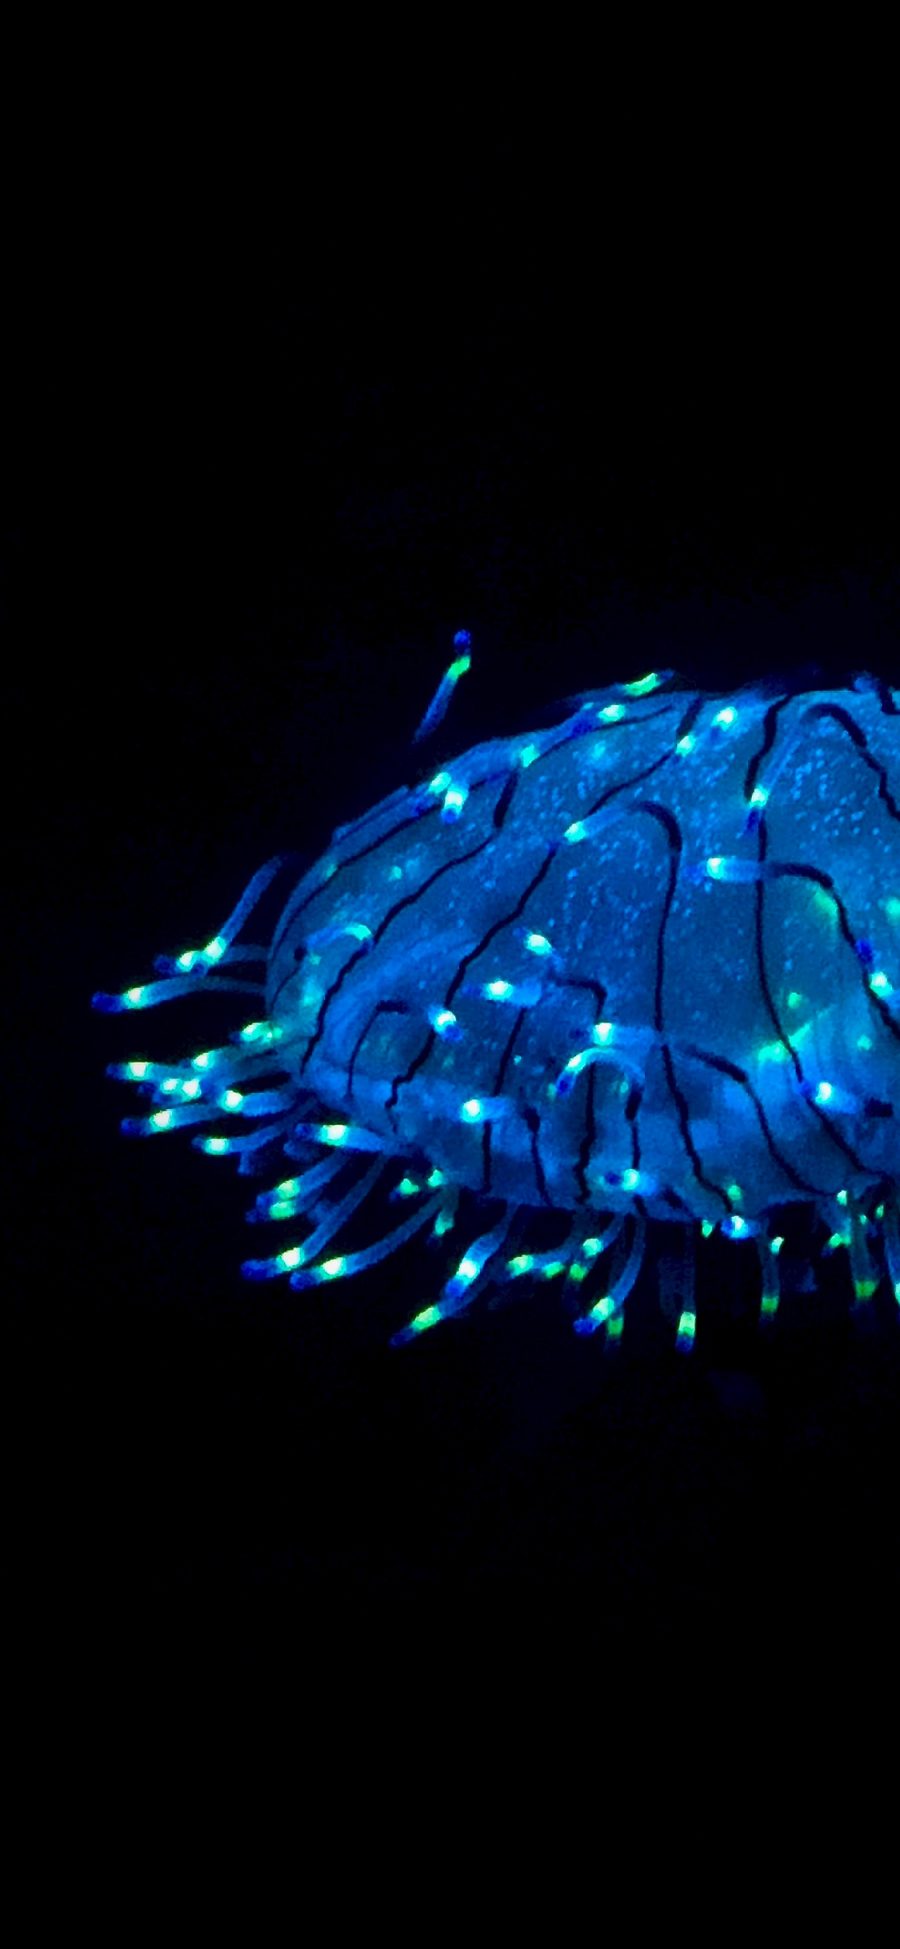 [2436×1125]水母 荧光 浮游 海洋生物 苹果手机壁纸图片